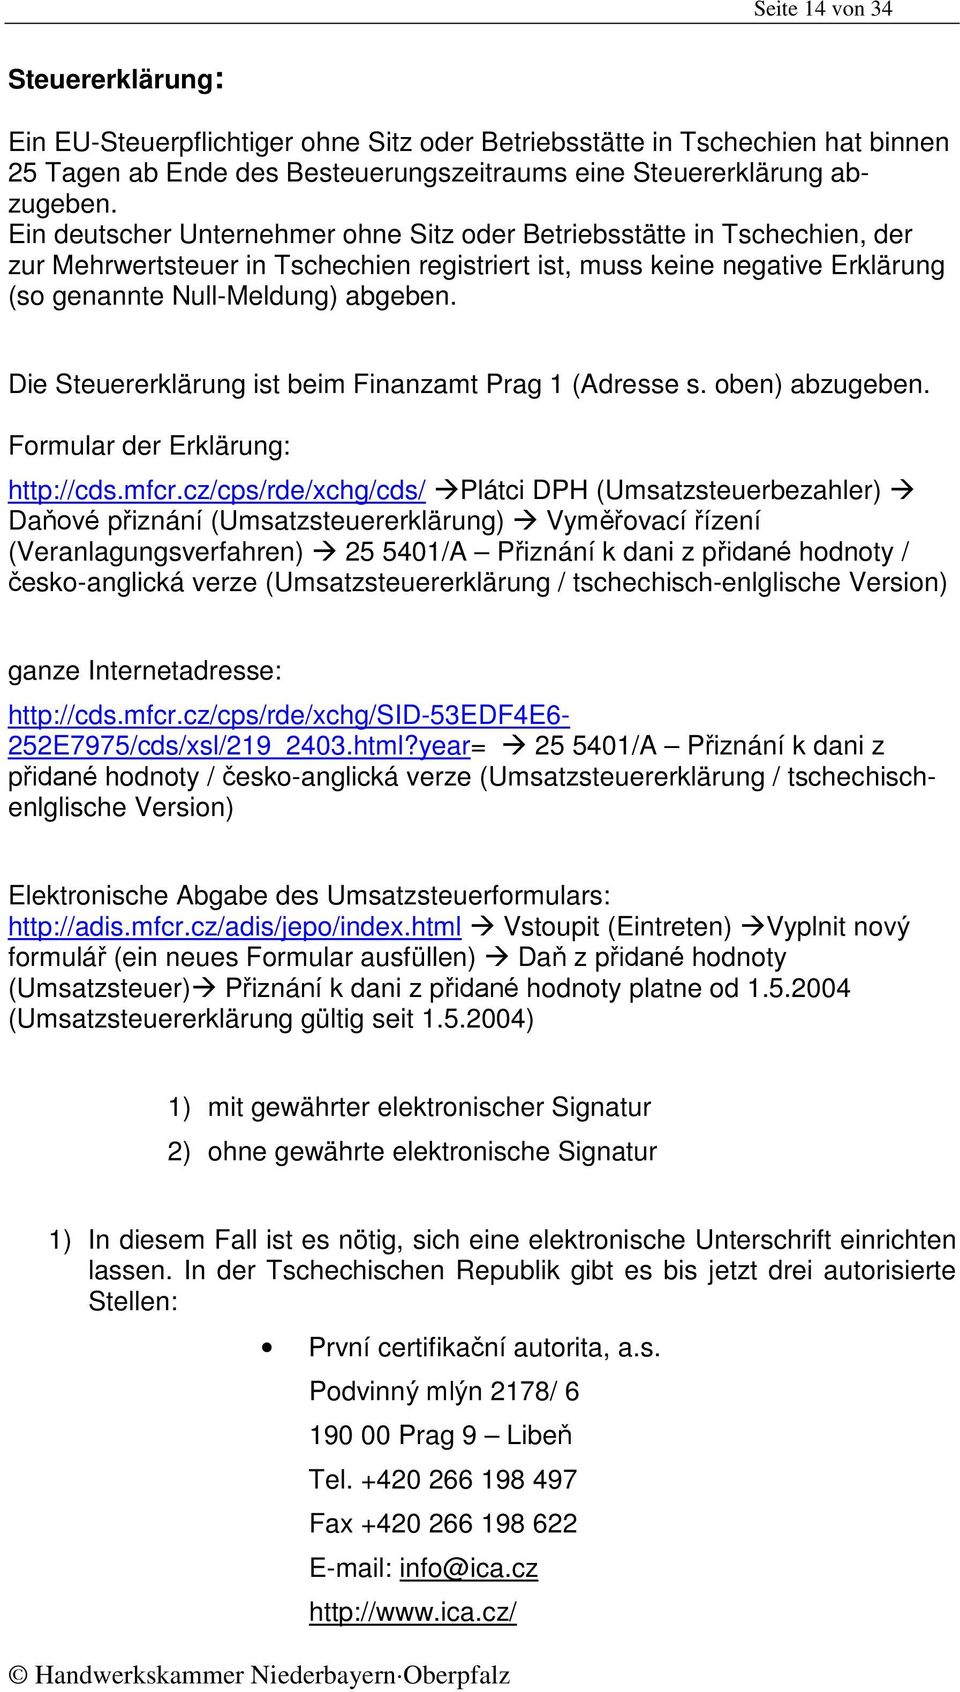 Die Steuererklärung ist beim Finanzamt Prag 1 (Adresse s. oben) abzugeben. Formular der Erklärung: http://cds.mfcr.